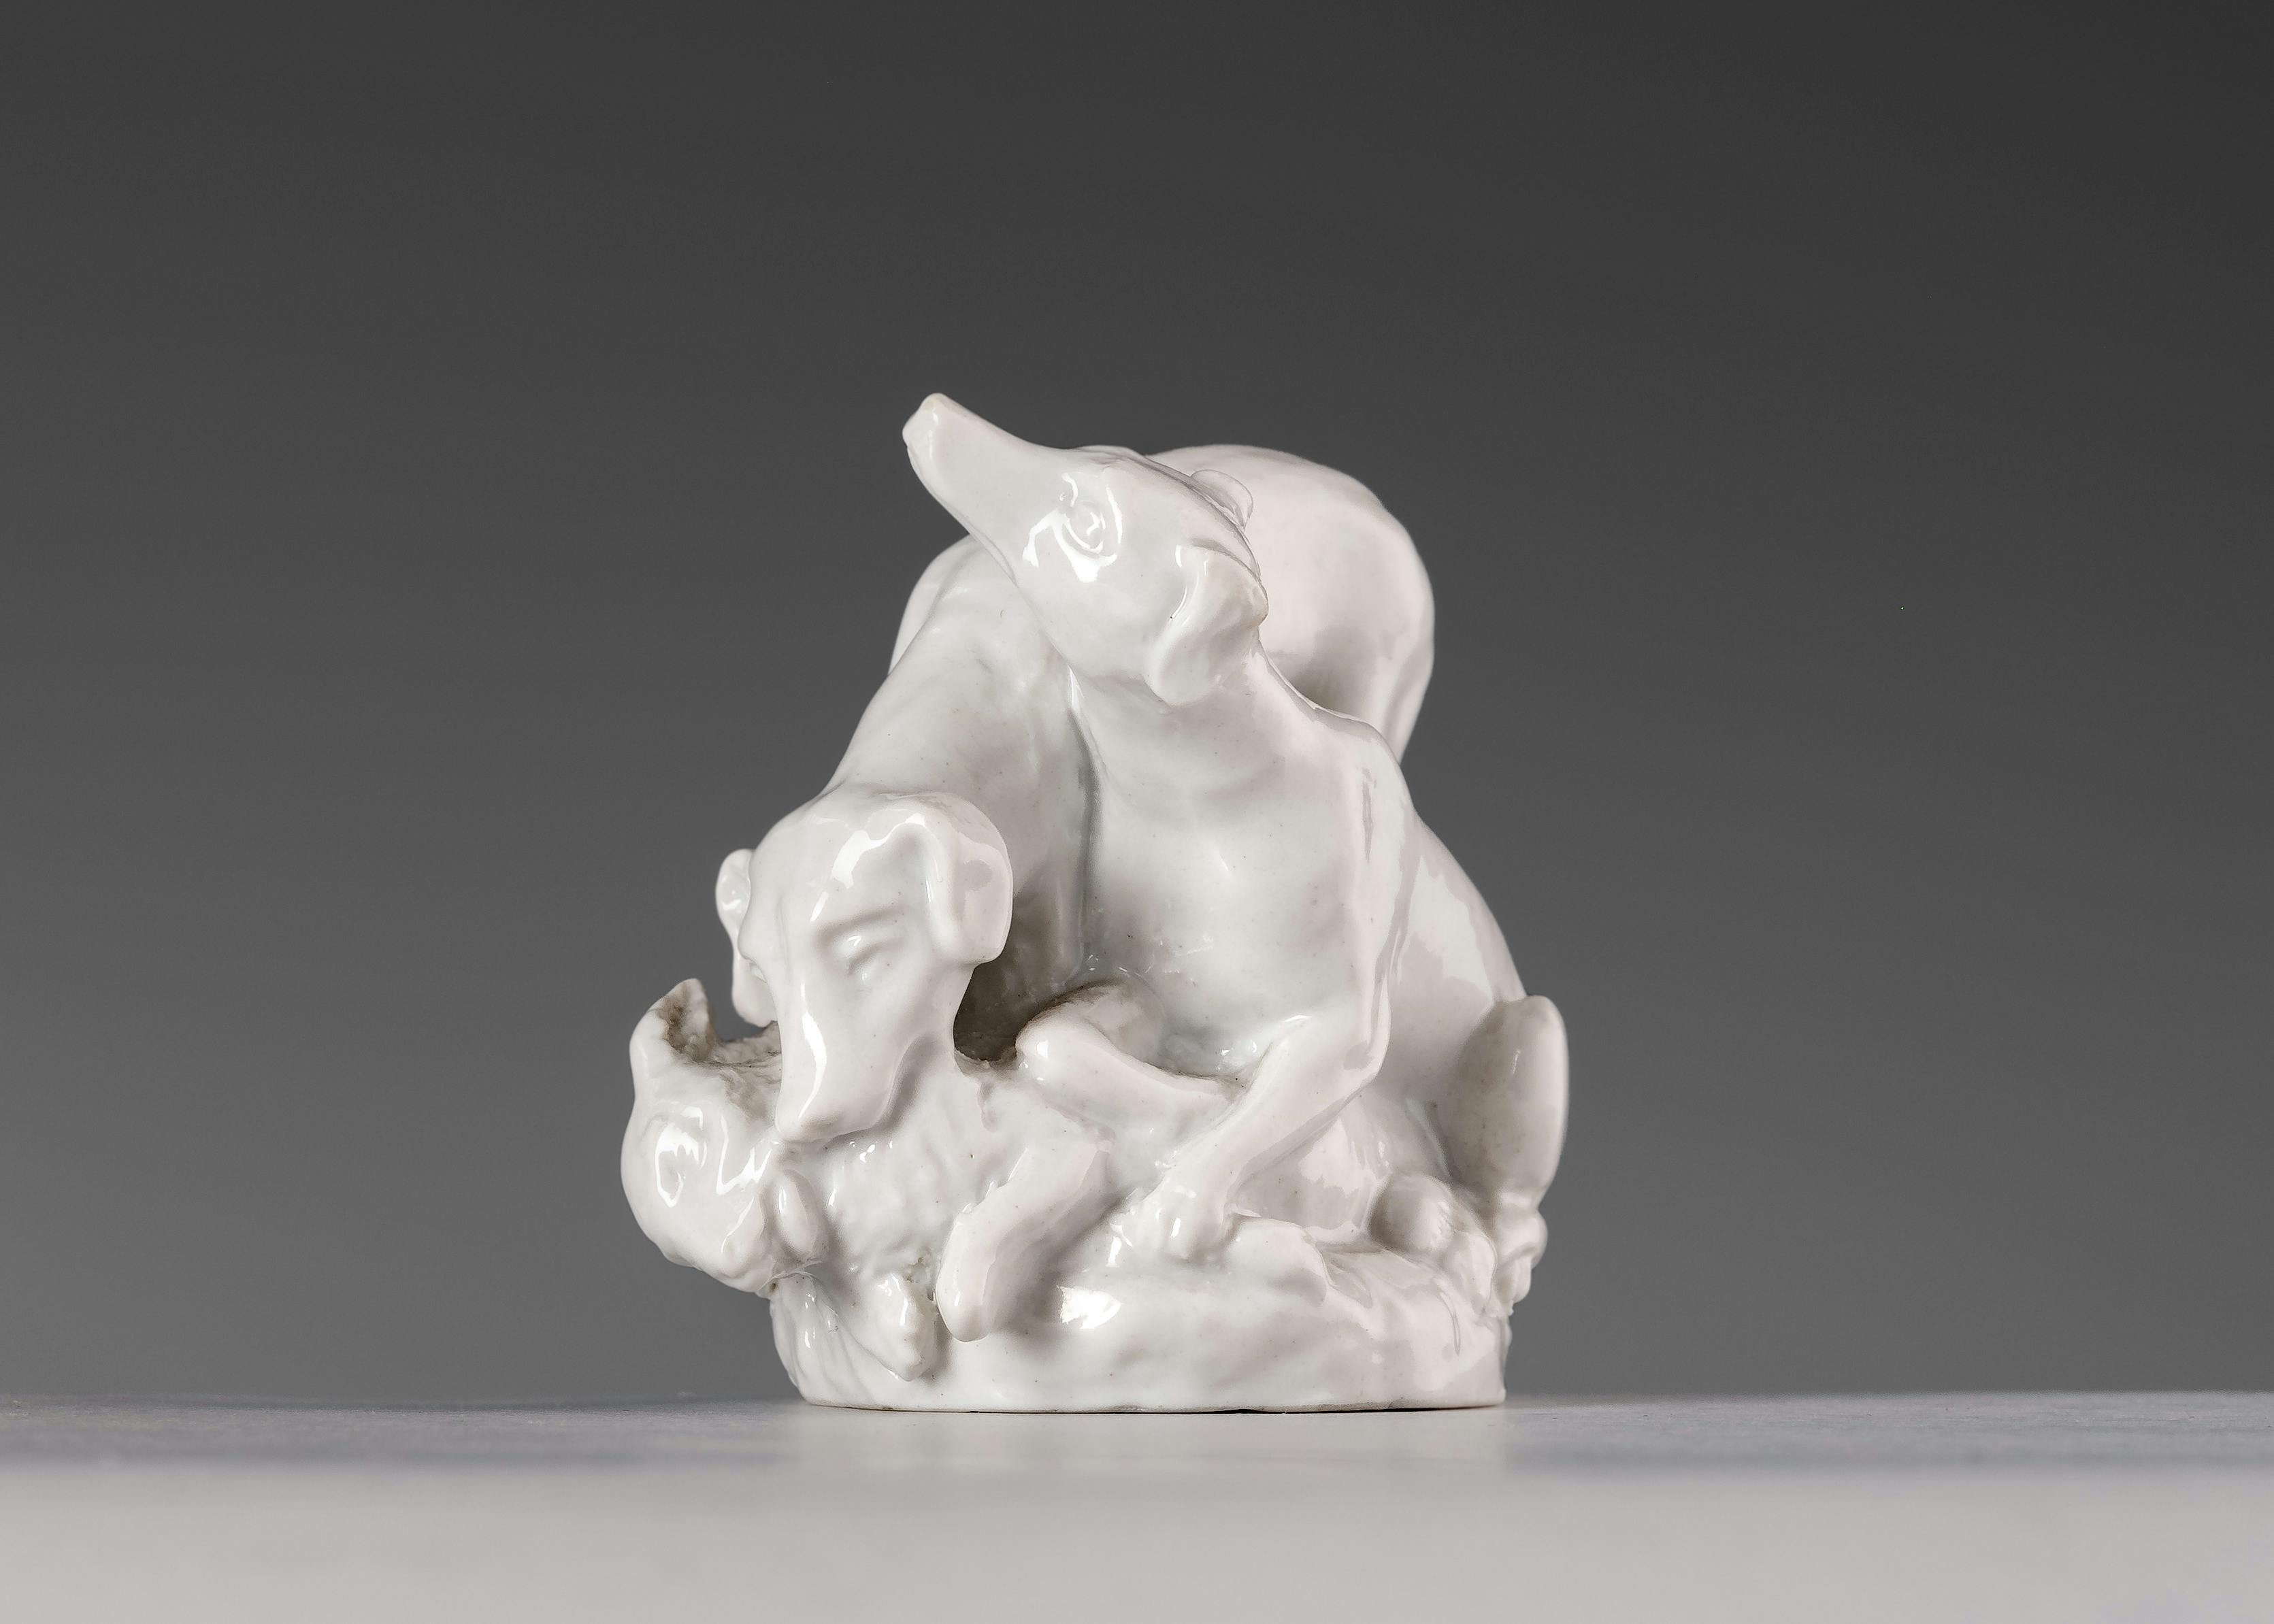 Piccola scultura in porcellana bianca che raffigura due cani che catturano un coniglio